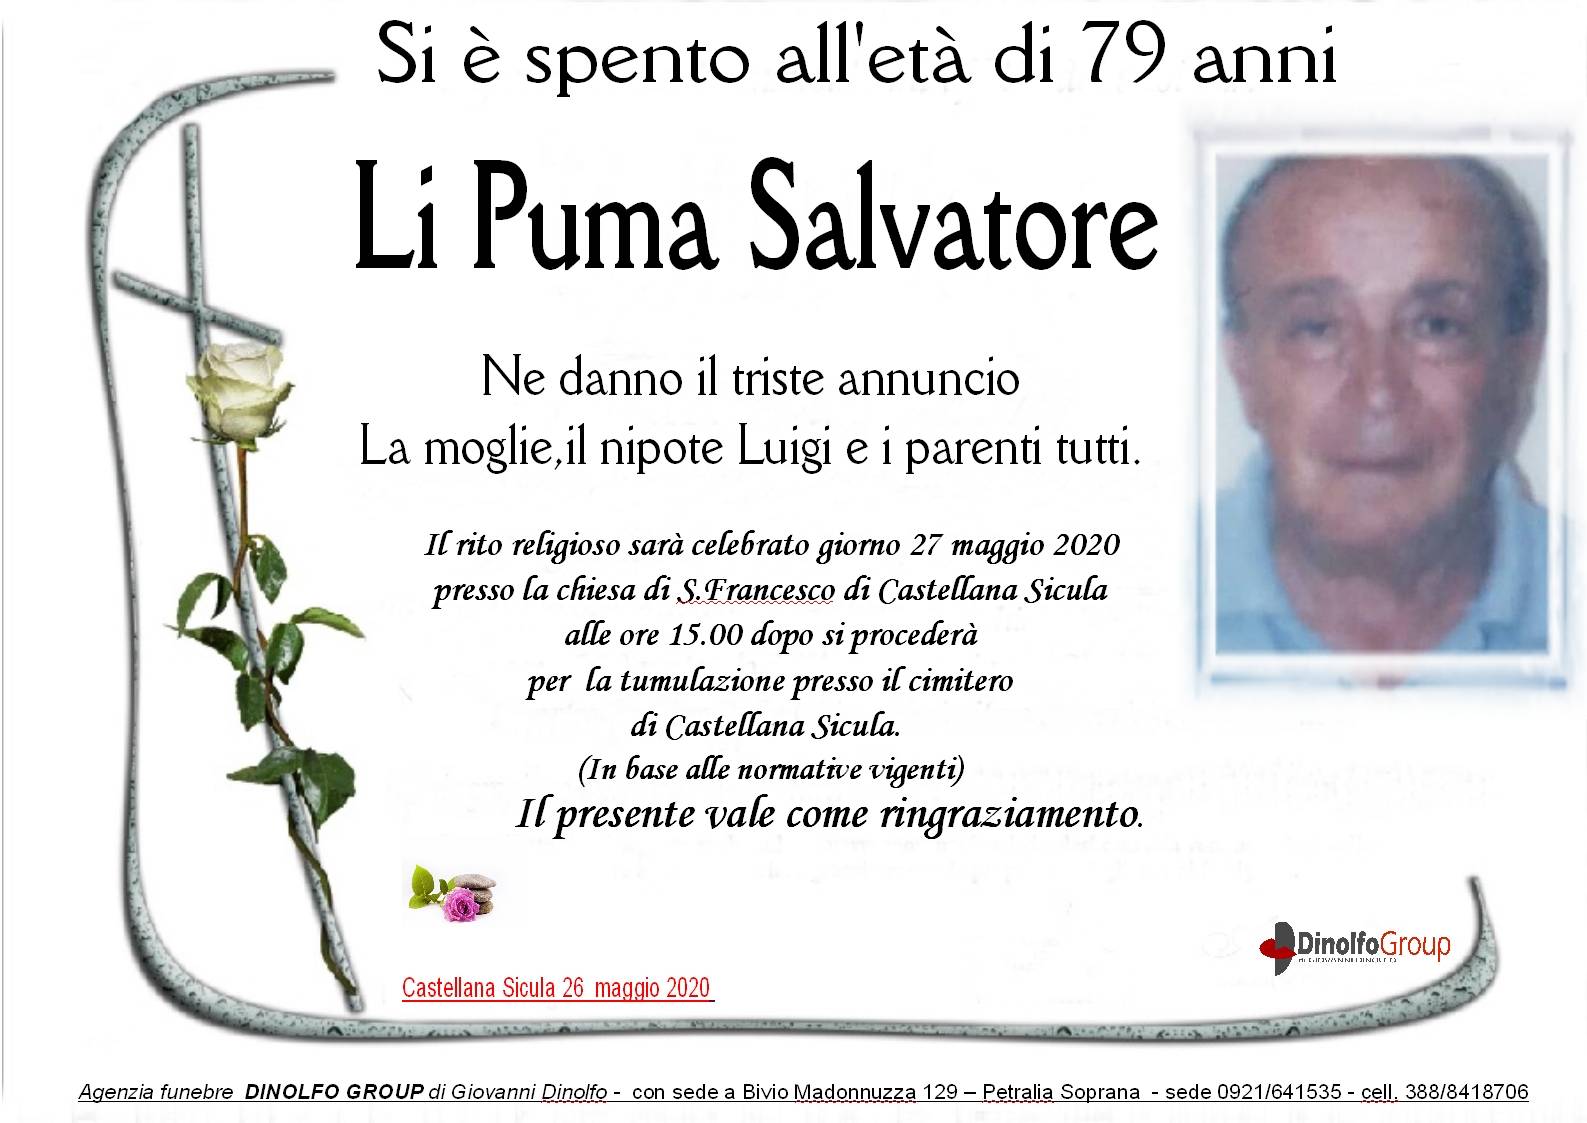 Salvatore Li Puma